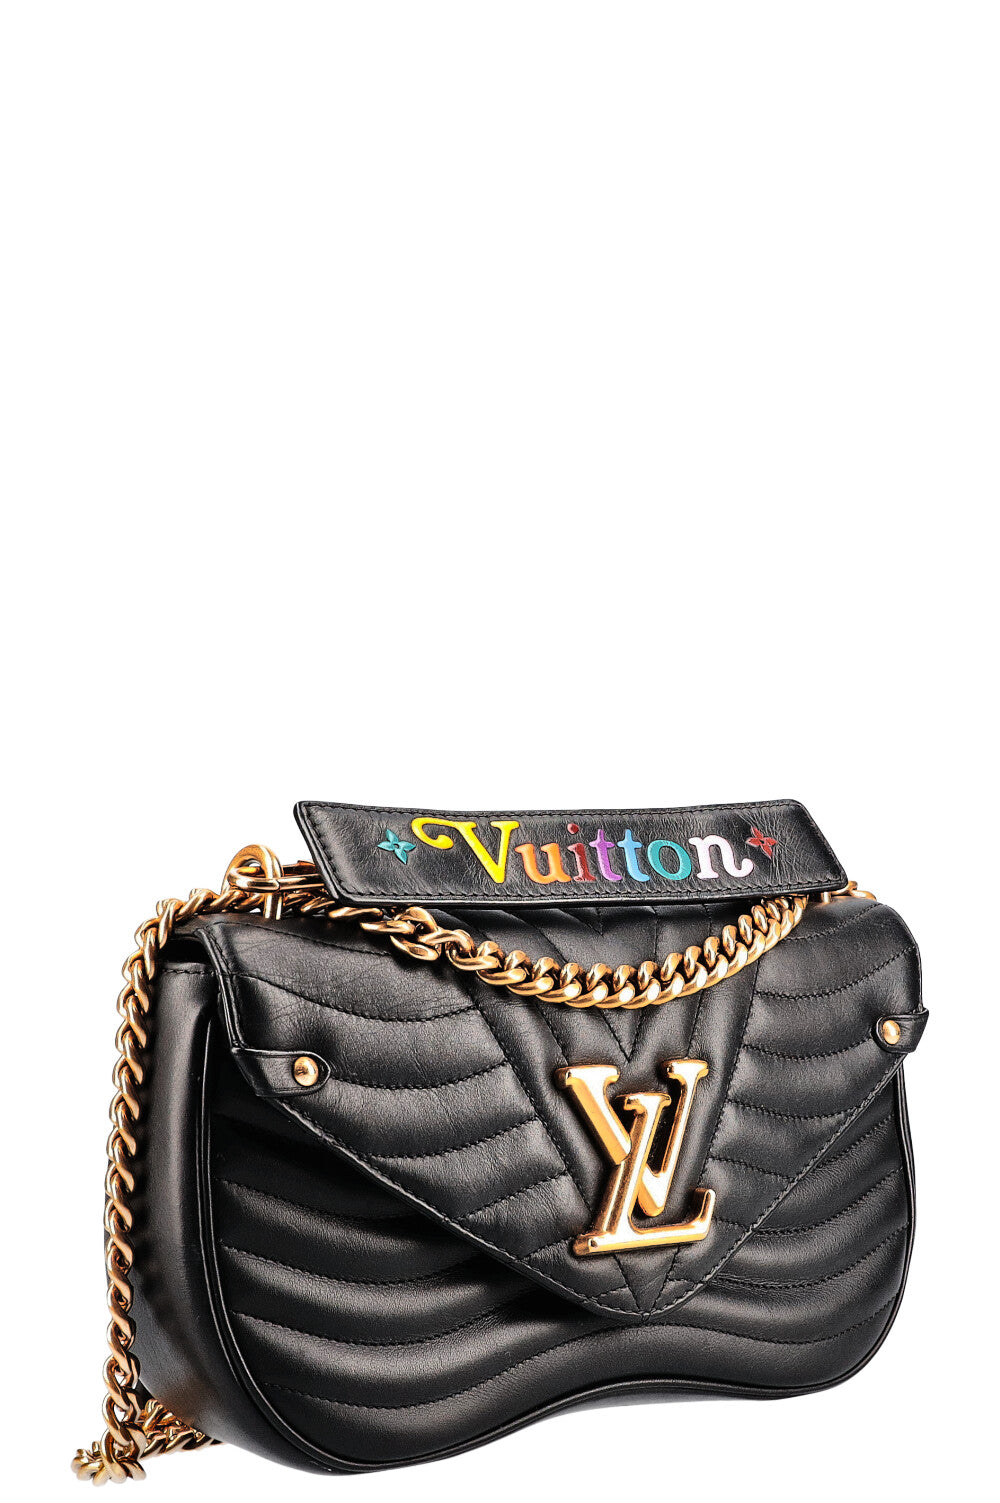 Authentic Louis Vuitton Black New Wave Chain MM Bag